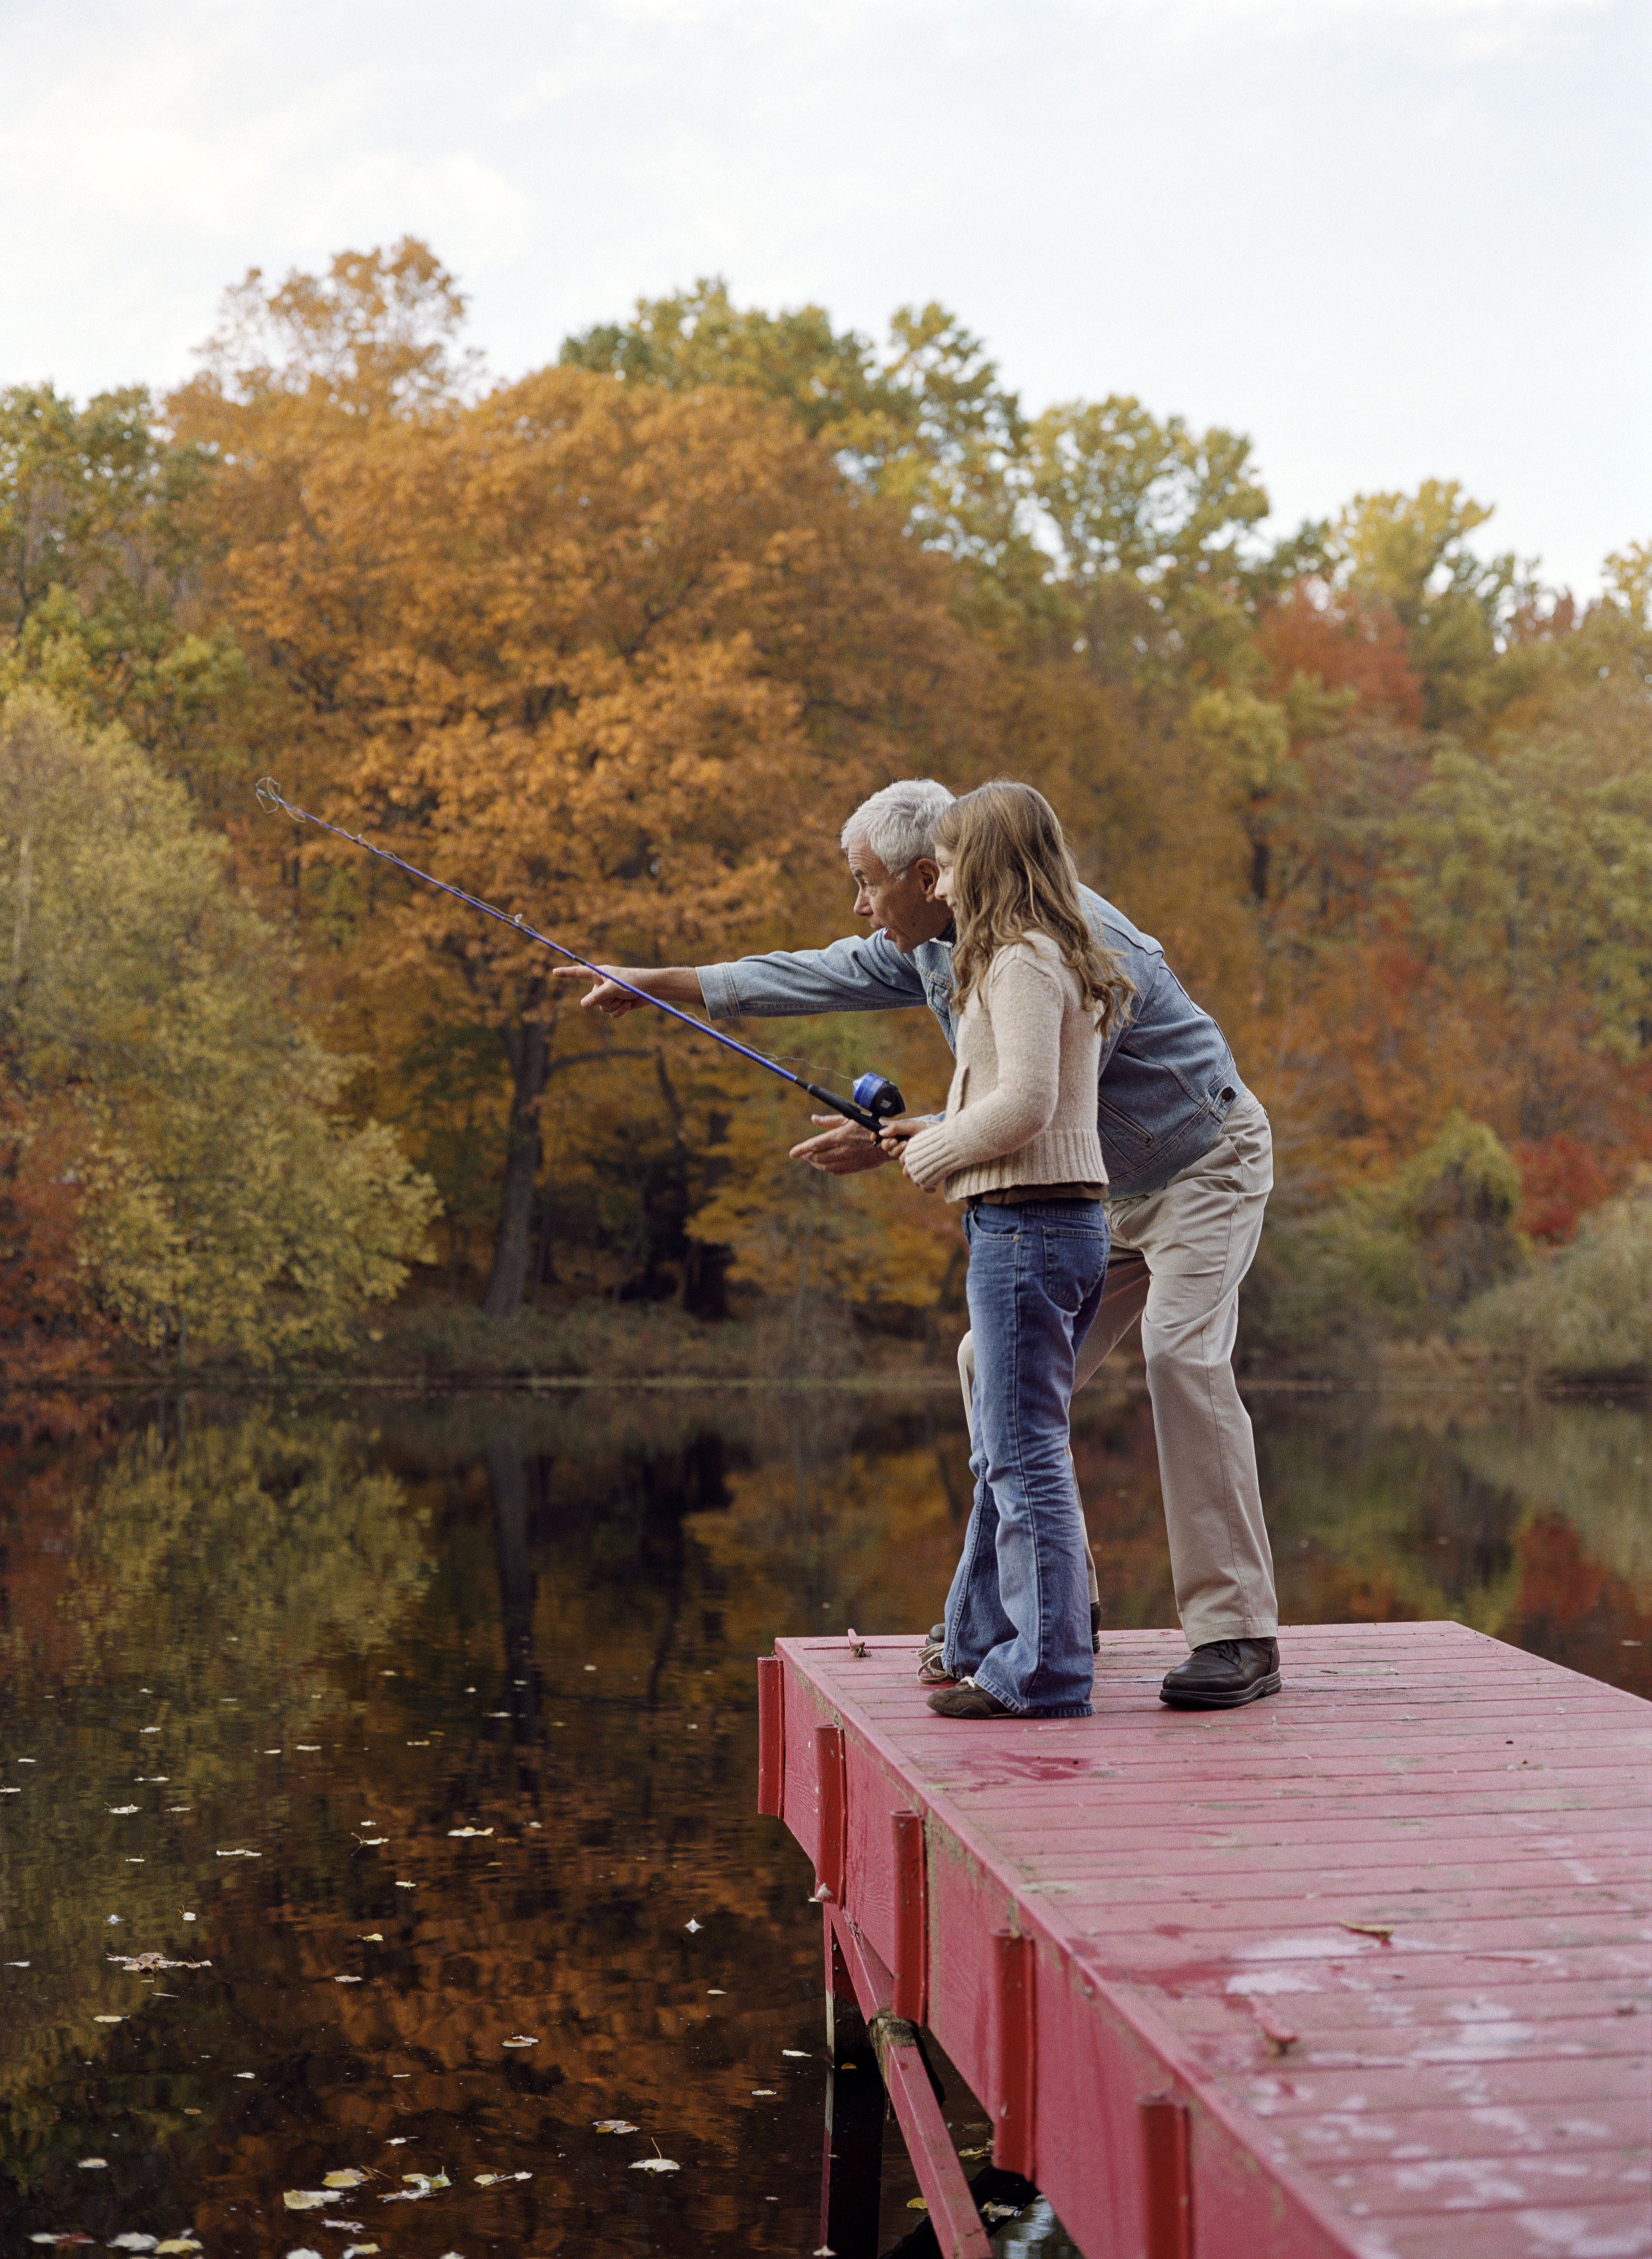 Grand-père et petite-fille (8-10) sur le quai, fille avec canne à pêche | Source : Getty Images